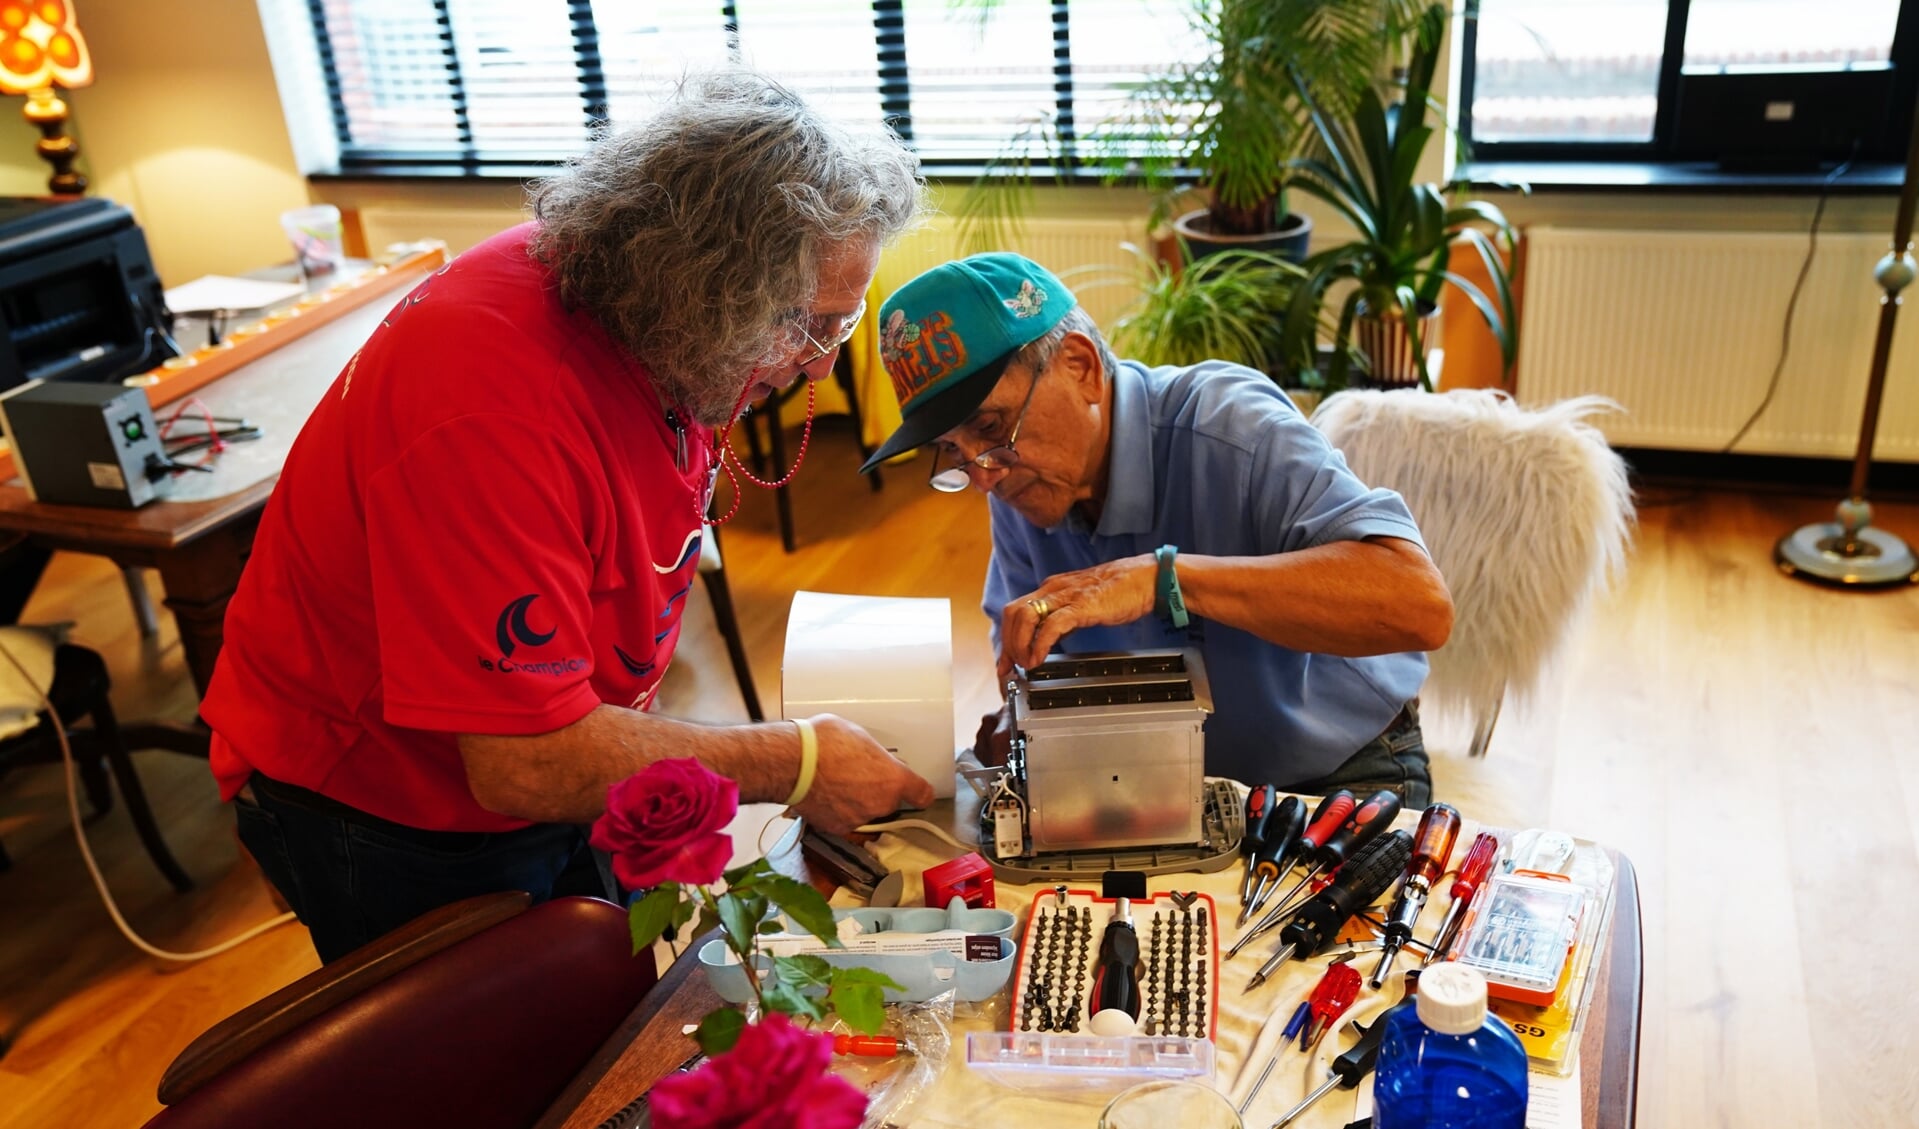 De vrijwilligers helpen elkaar regelmatig bij het maken van een apparaat. 